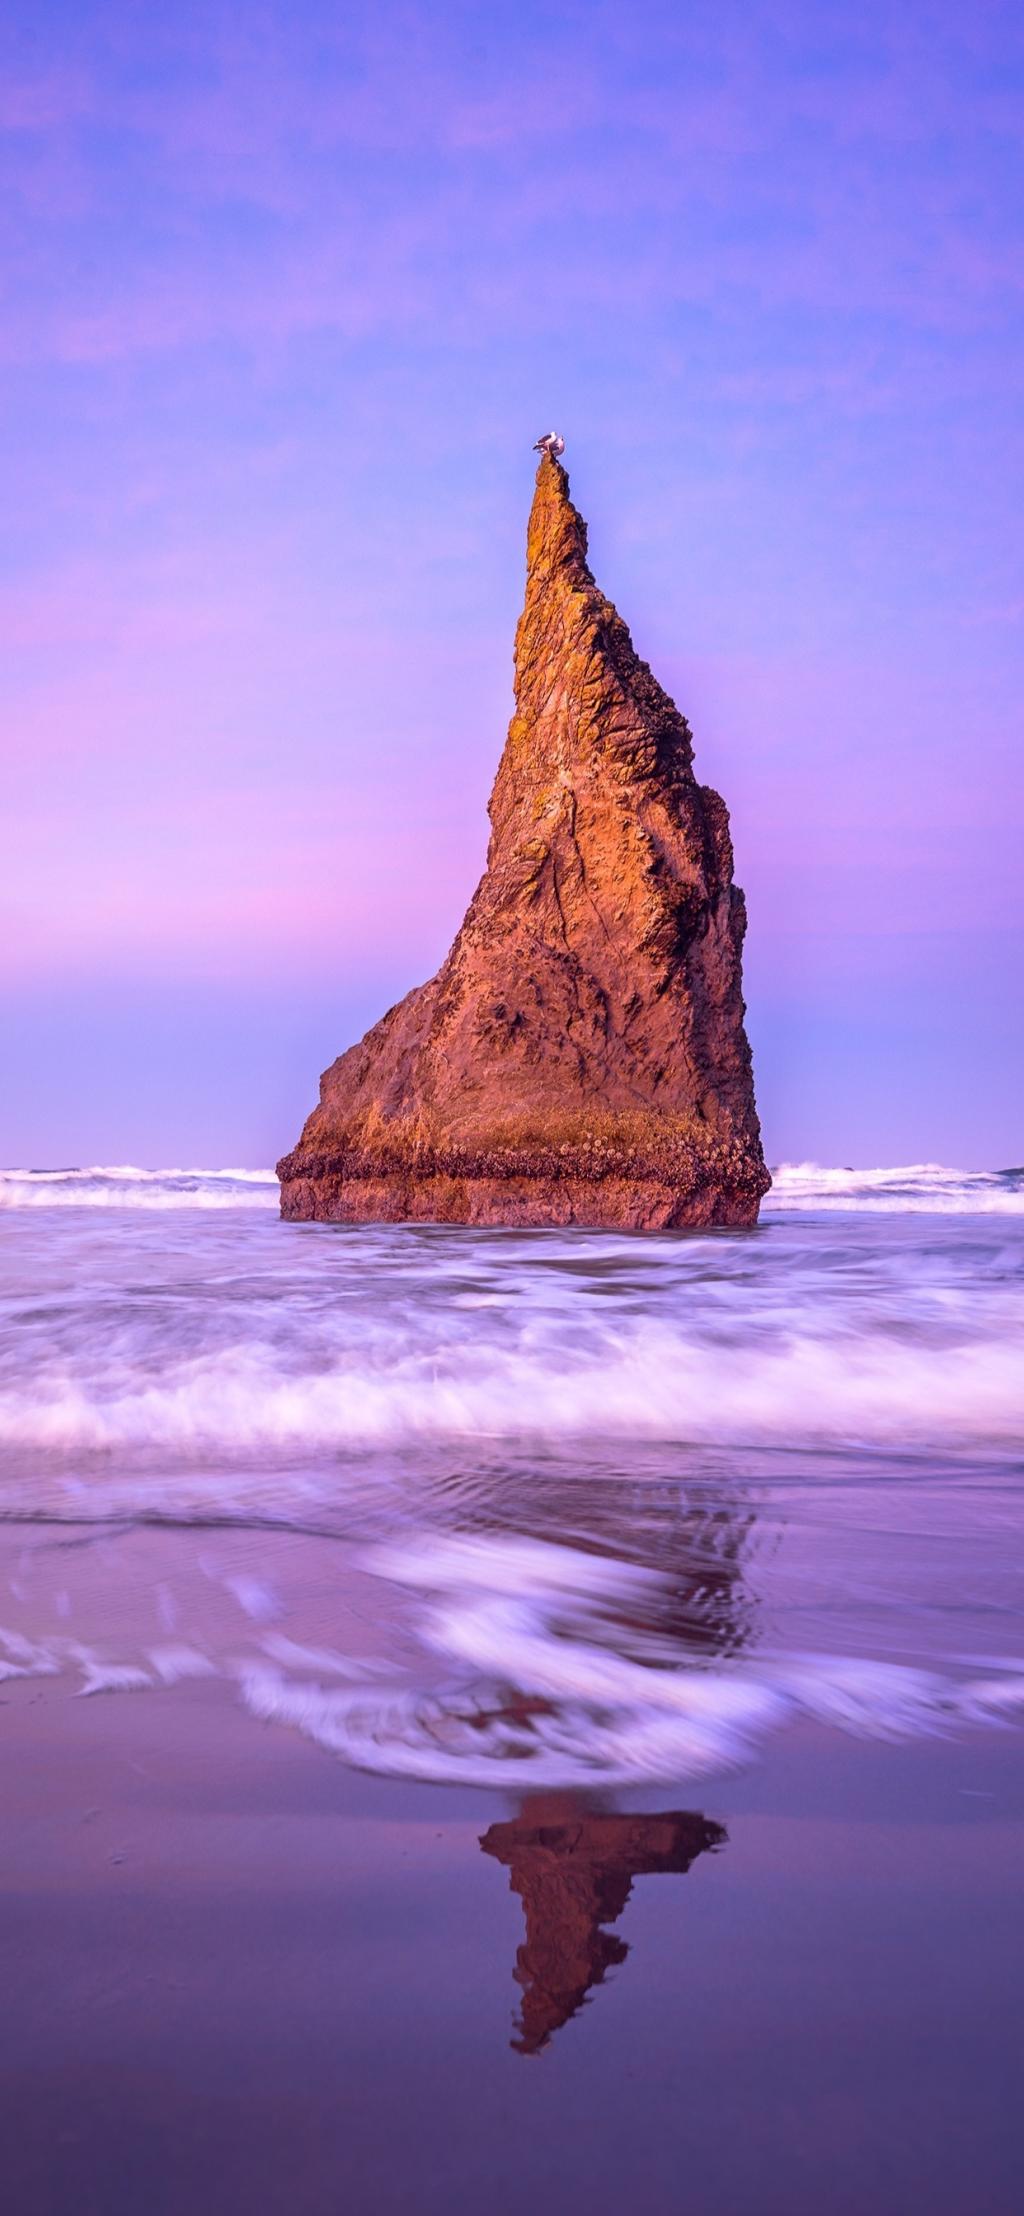 紫色天空下的海蚀柱